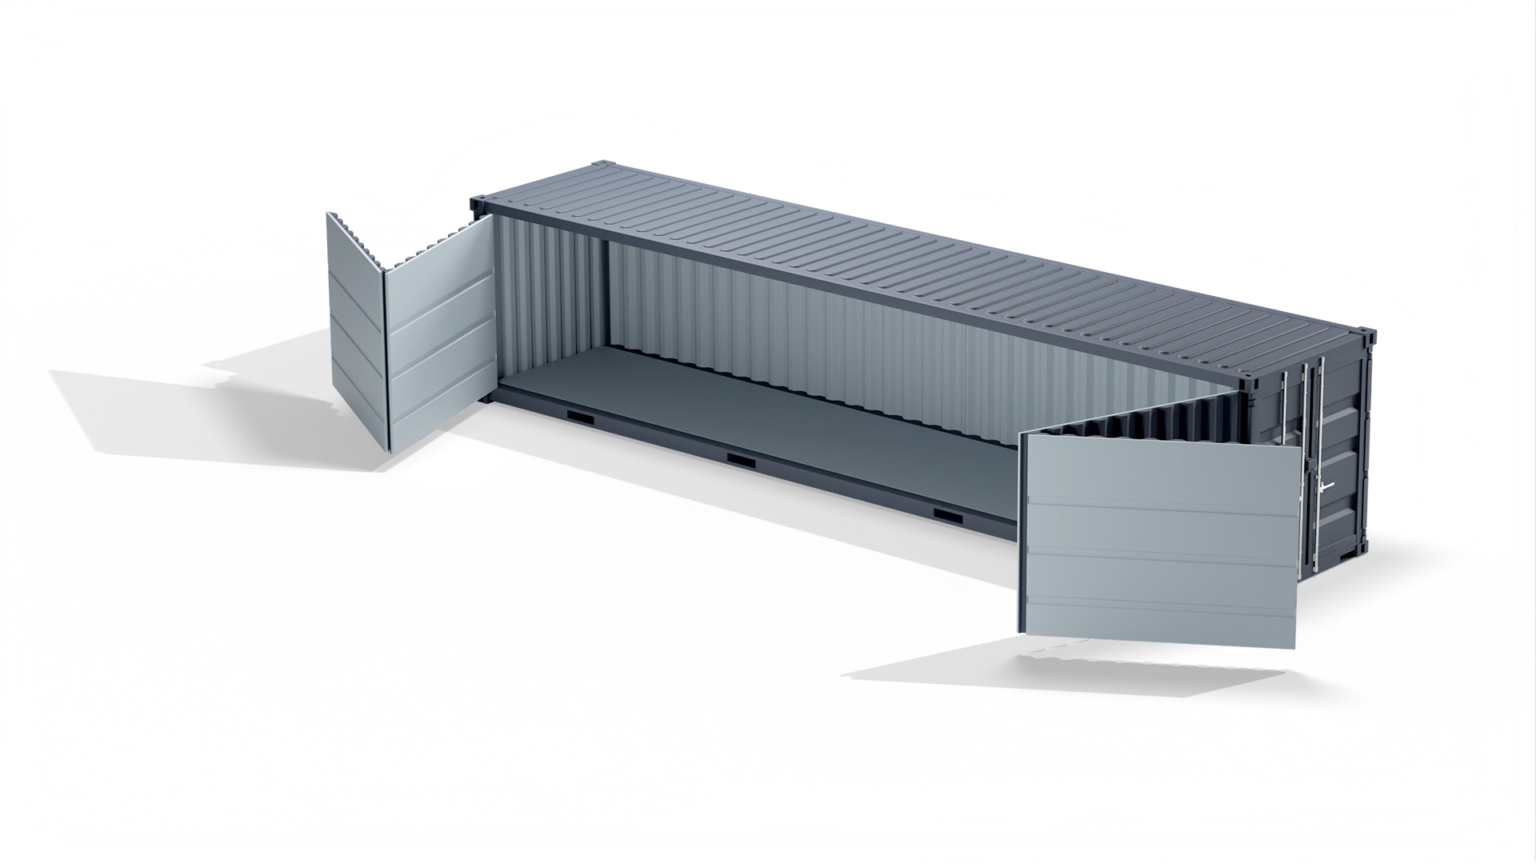 Container maritime 40 pieds hc openside disponible neuf et occasion pour stockage flexible, adaptable et économique- eurobox_0